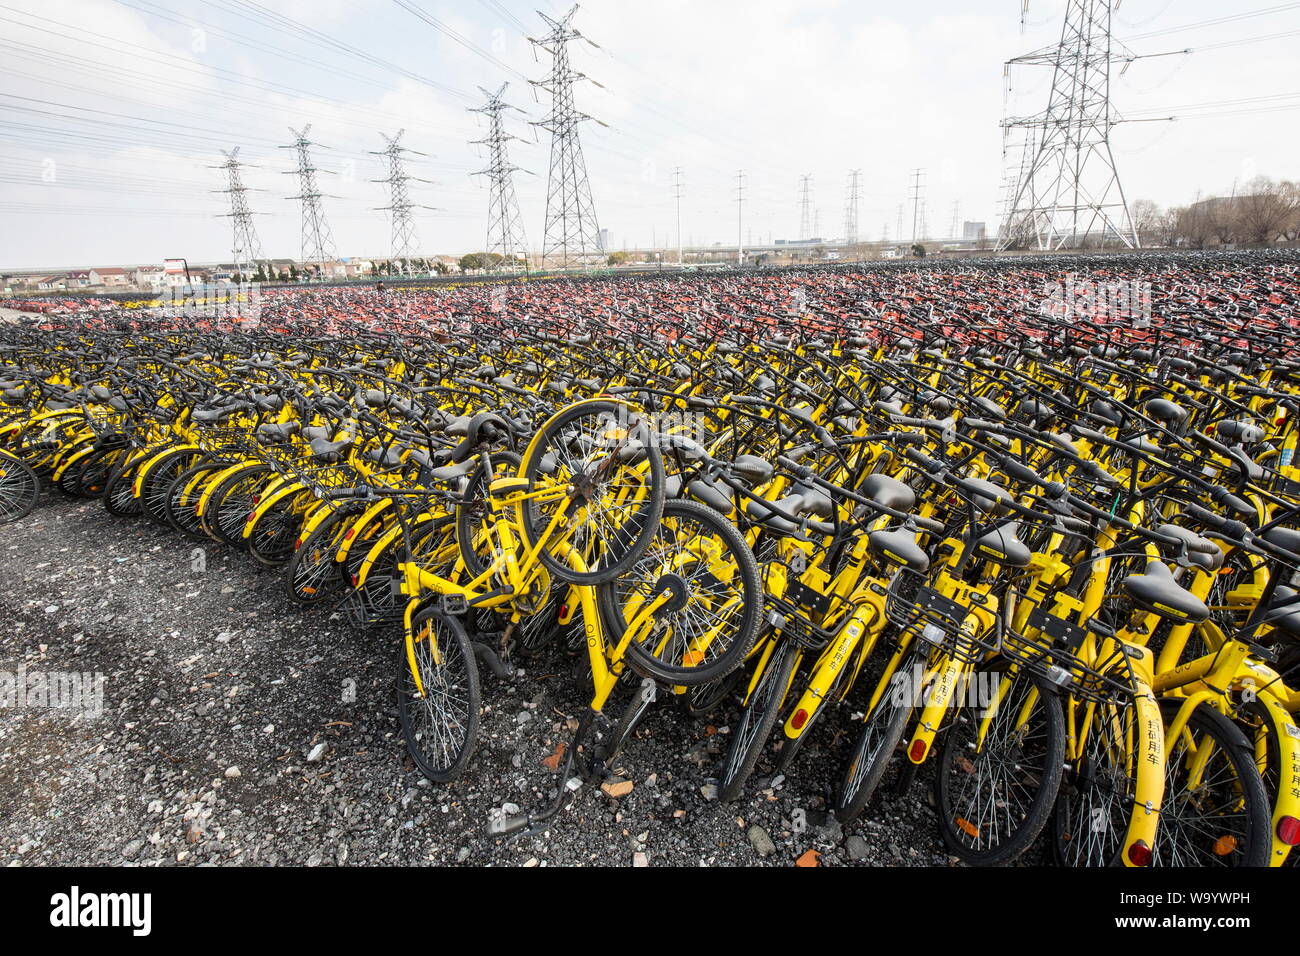 Vélo CHINOIS PARTAGER CIMETIÈRE UN MONUMENT À L'arrogance de l'industrie Banque D'Images